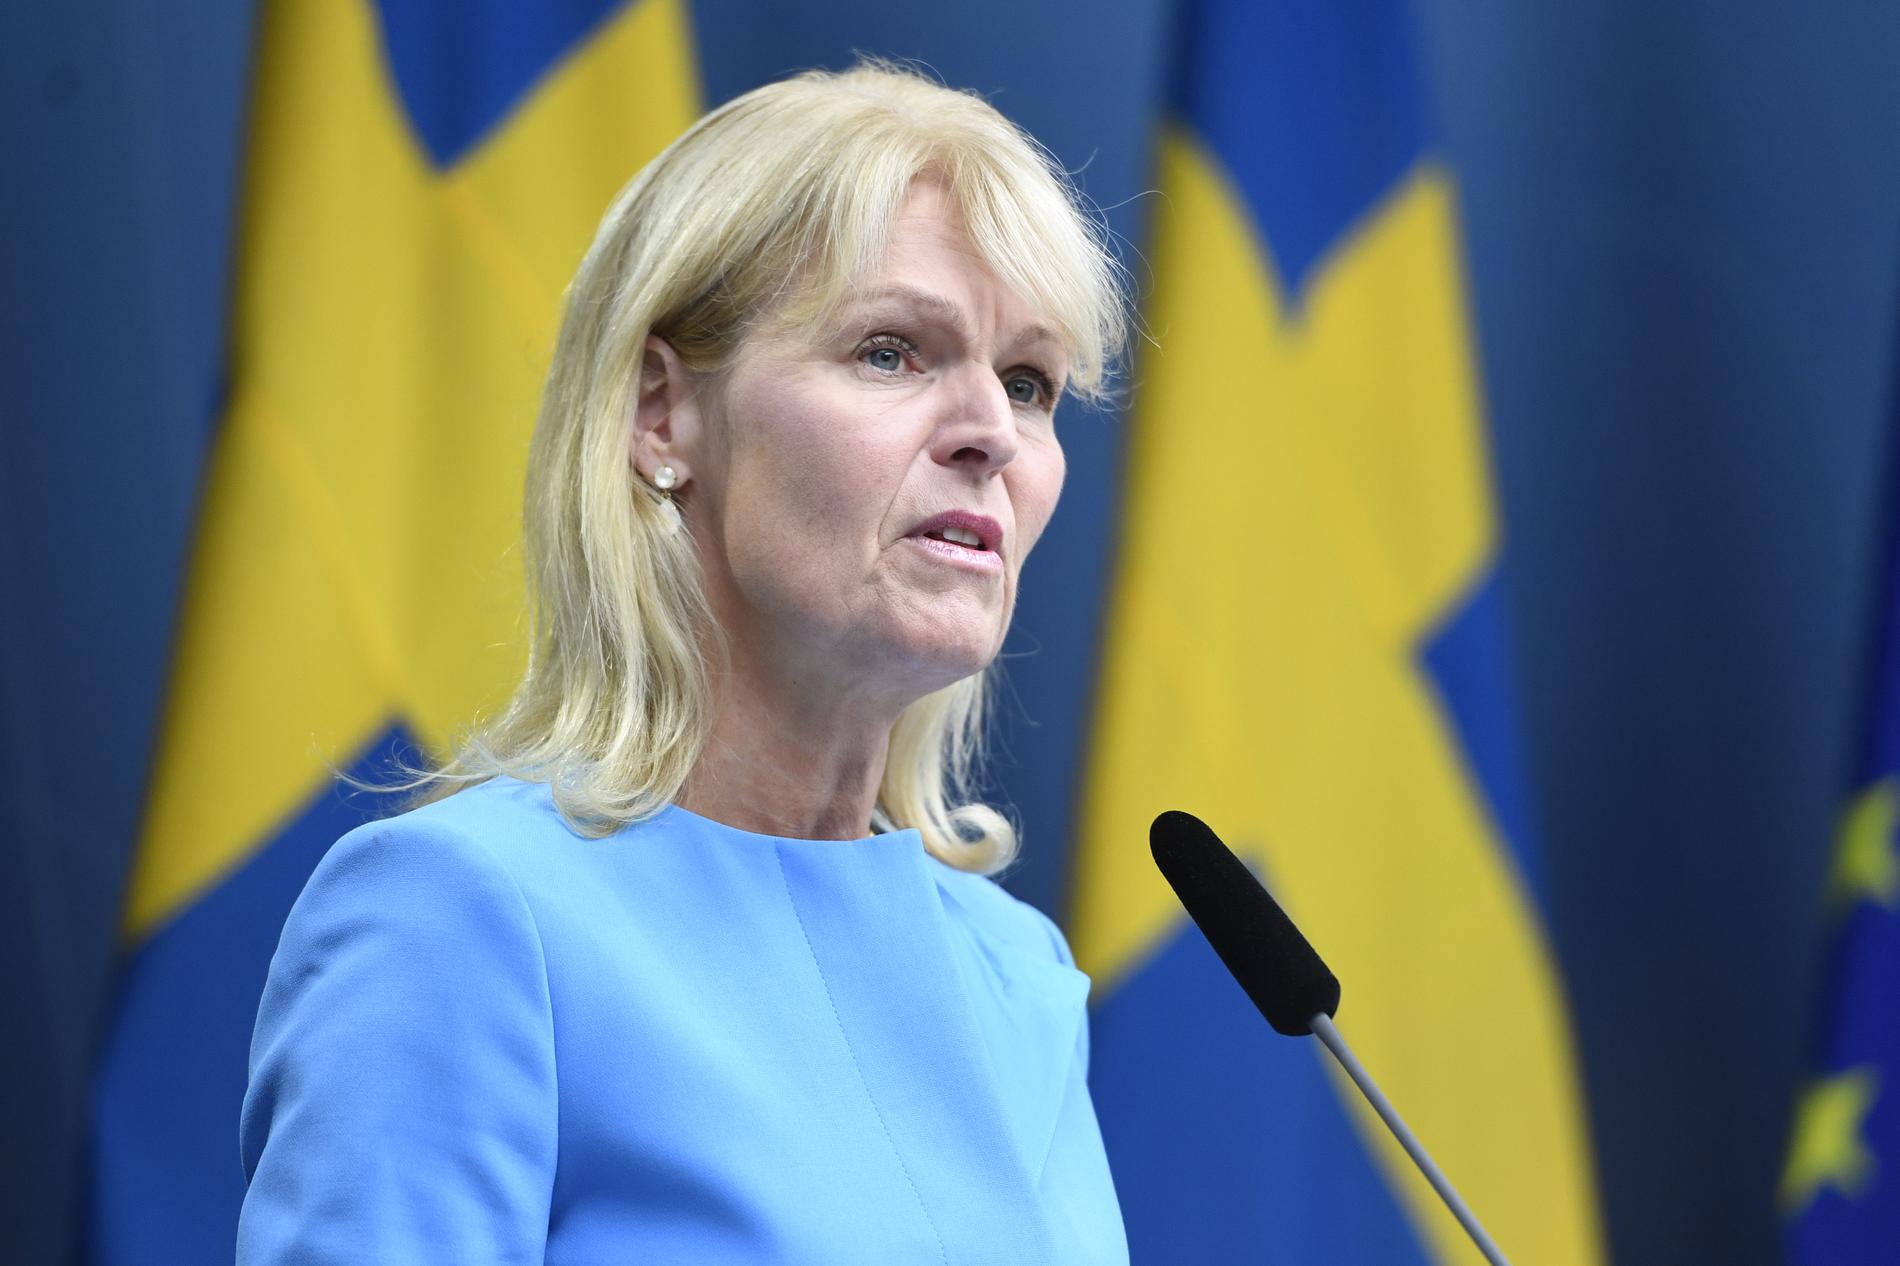 – Vi har en pågående dialog med den norska regeringen för att få i gång arbetspendlingen igen, säger utrikeshandelsminister Anna Hallberg. Arkivbild.